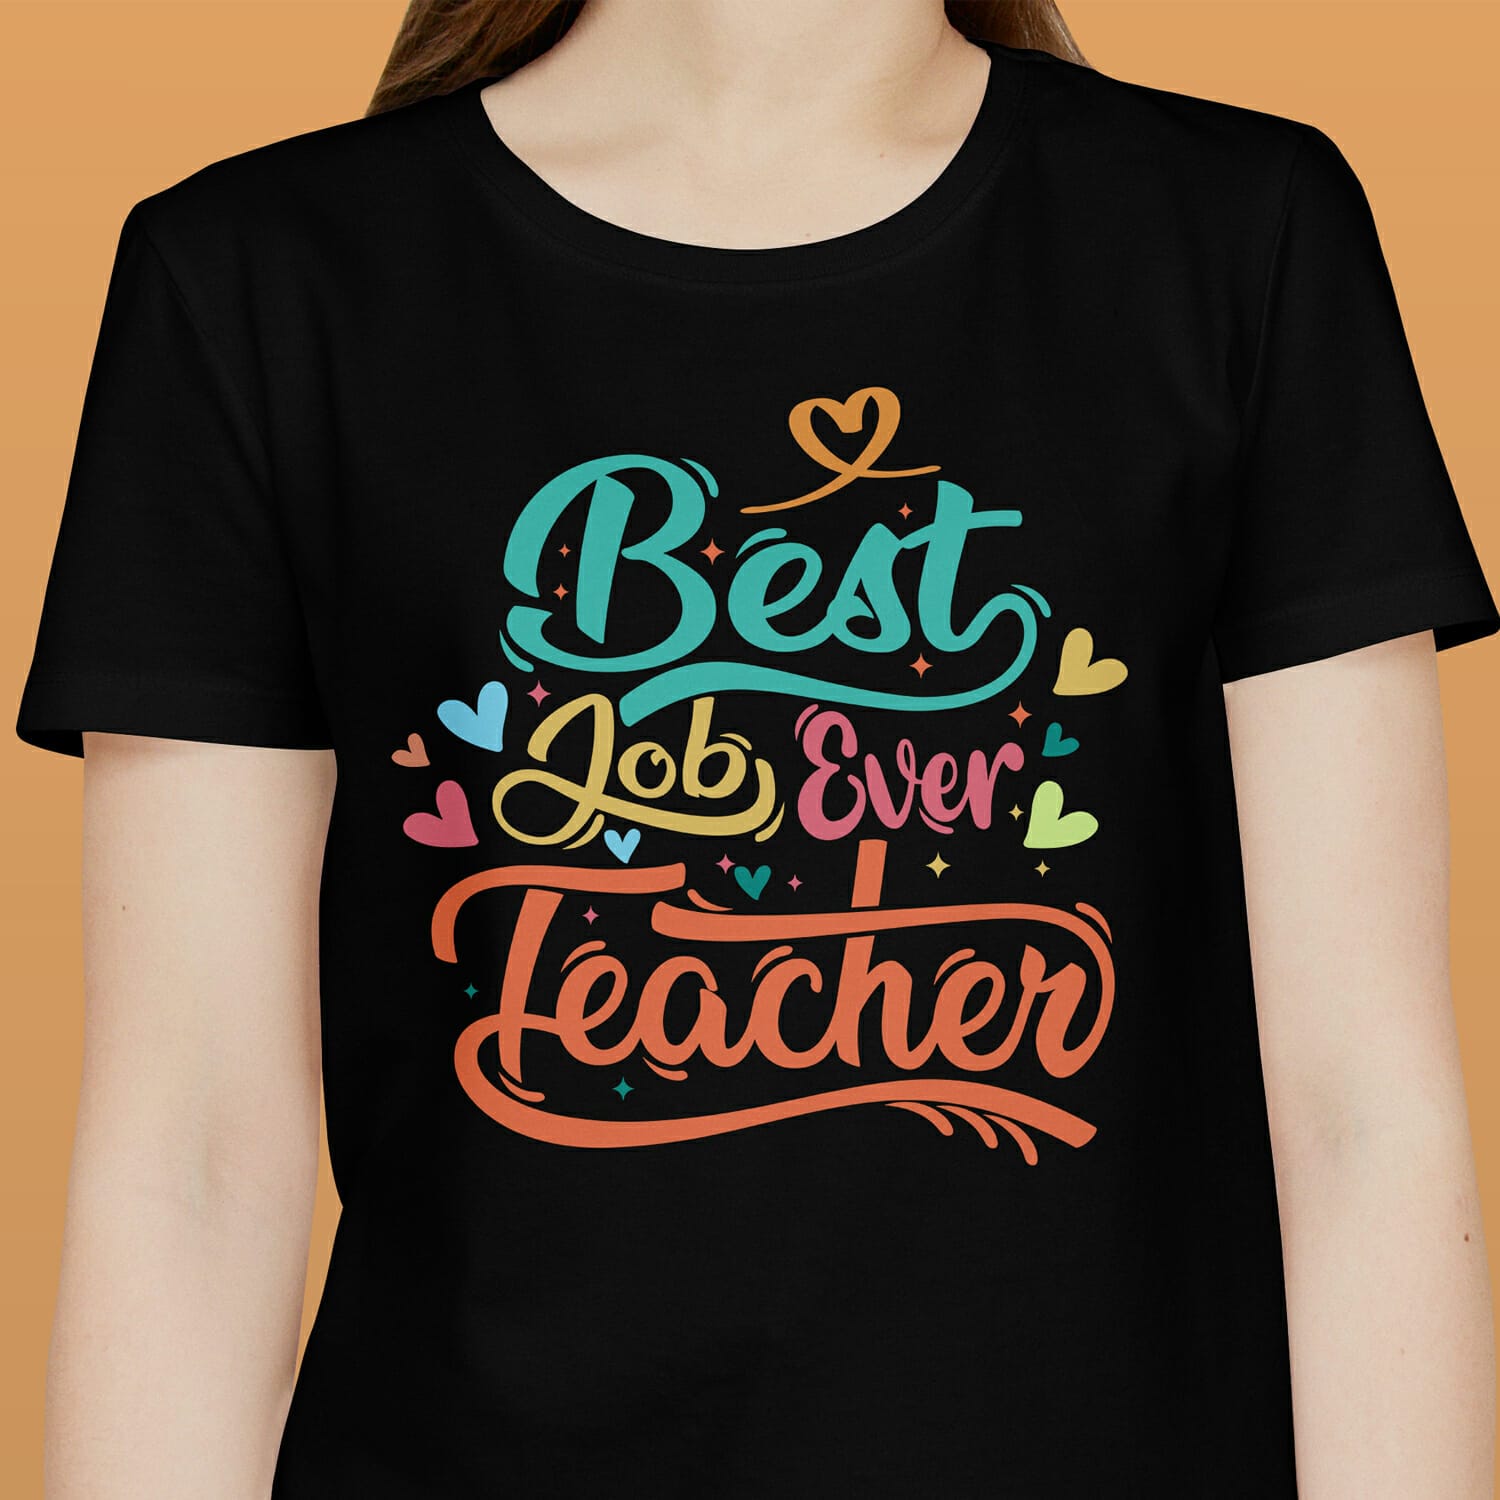 Best job Ever T-shirt design for Teacher